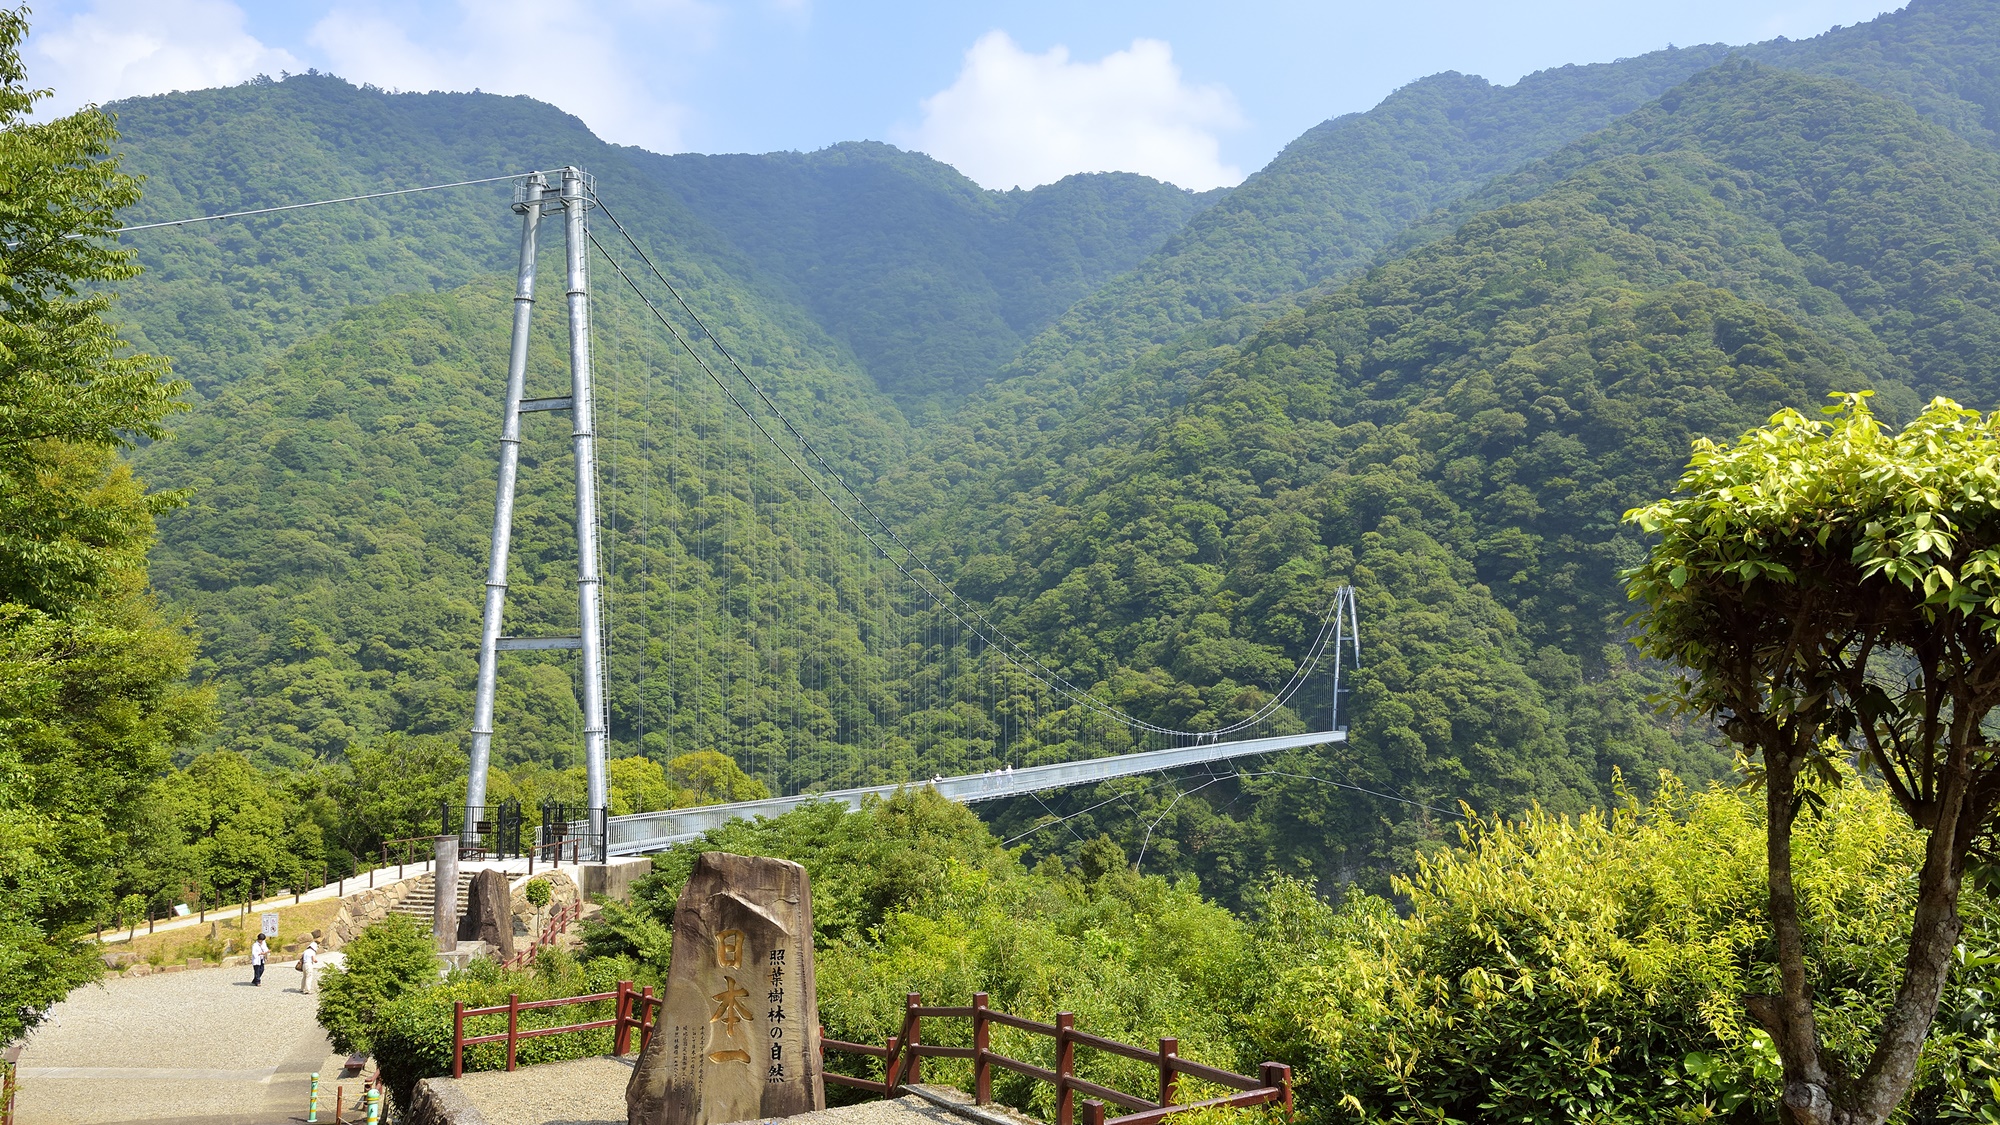 【照葉大吊橋】照葉樹林を守るために架けられた“日本最大級”の高さを誇る大吊橋です。